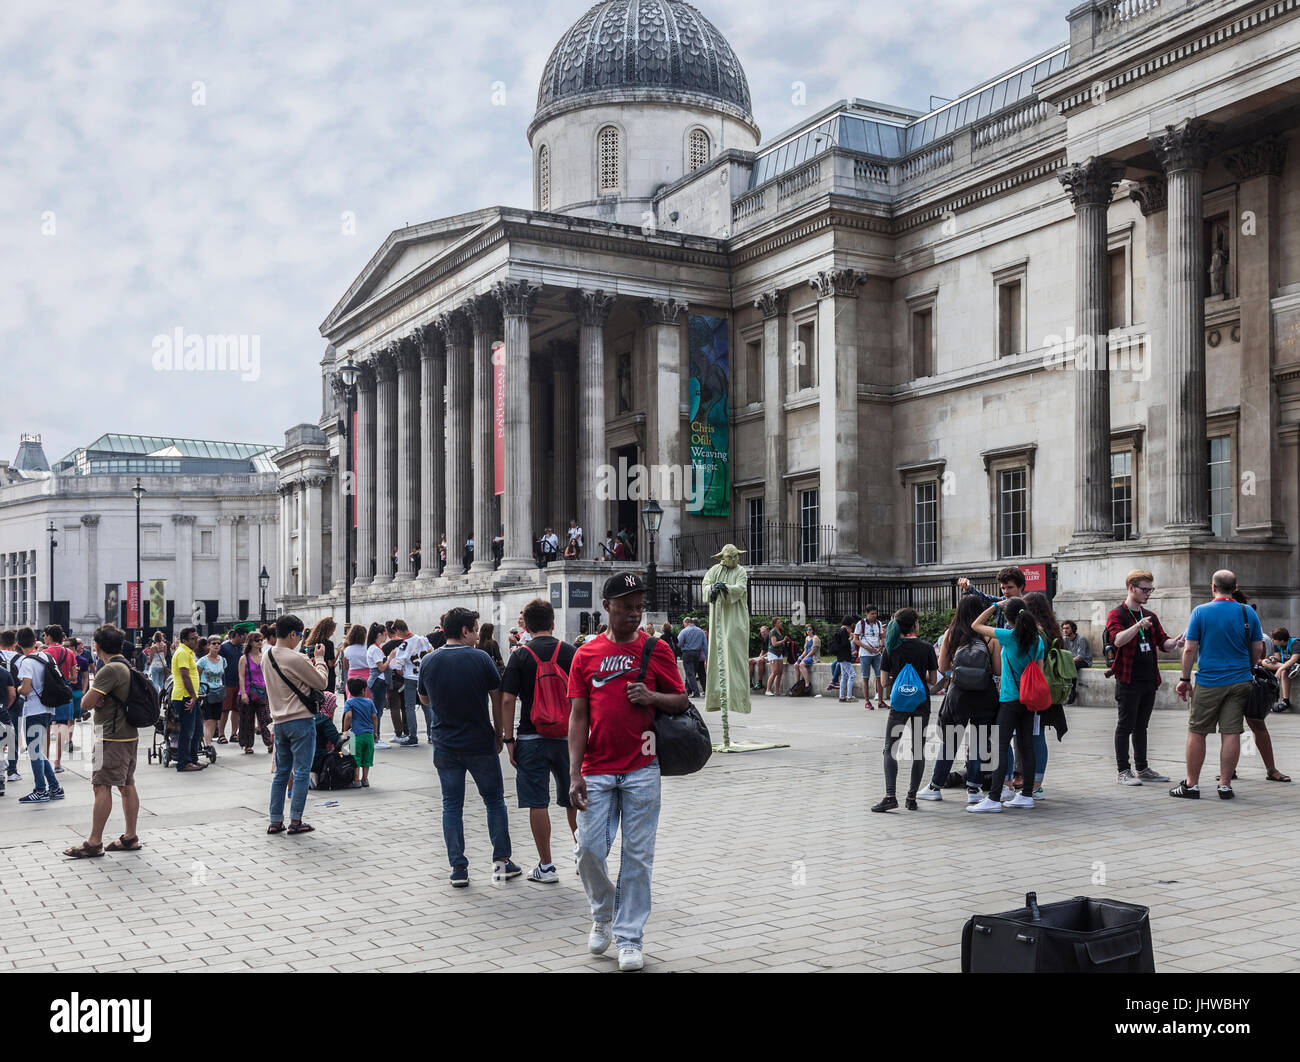 Les touristes et les habitants à l'extérieur de la National Gallery de Trafalgar Square, au centre de Londres. Les familles, amis, artiste de rue, Yoda. Banque D'Images